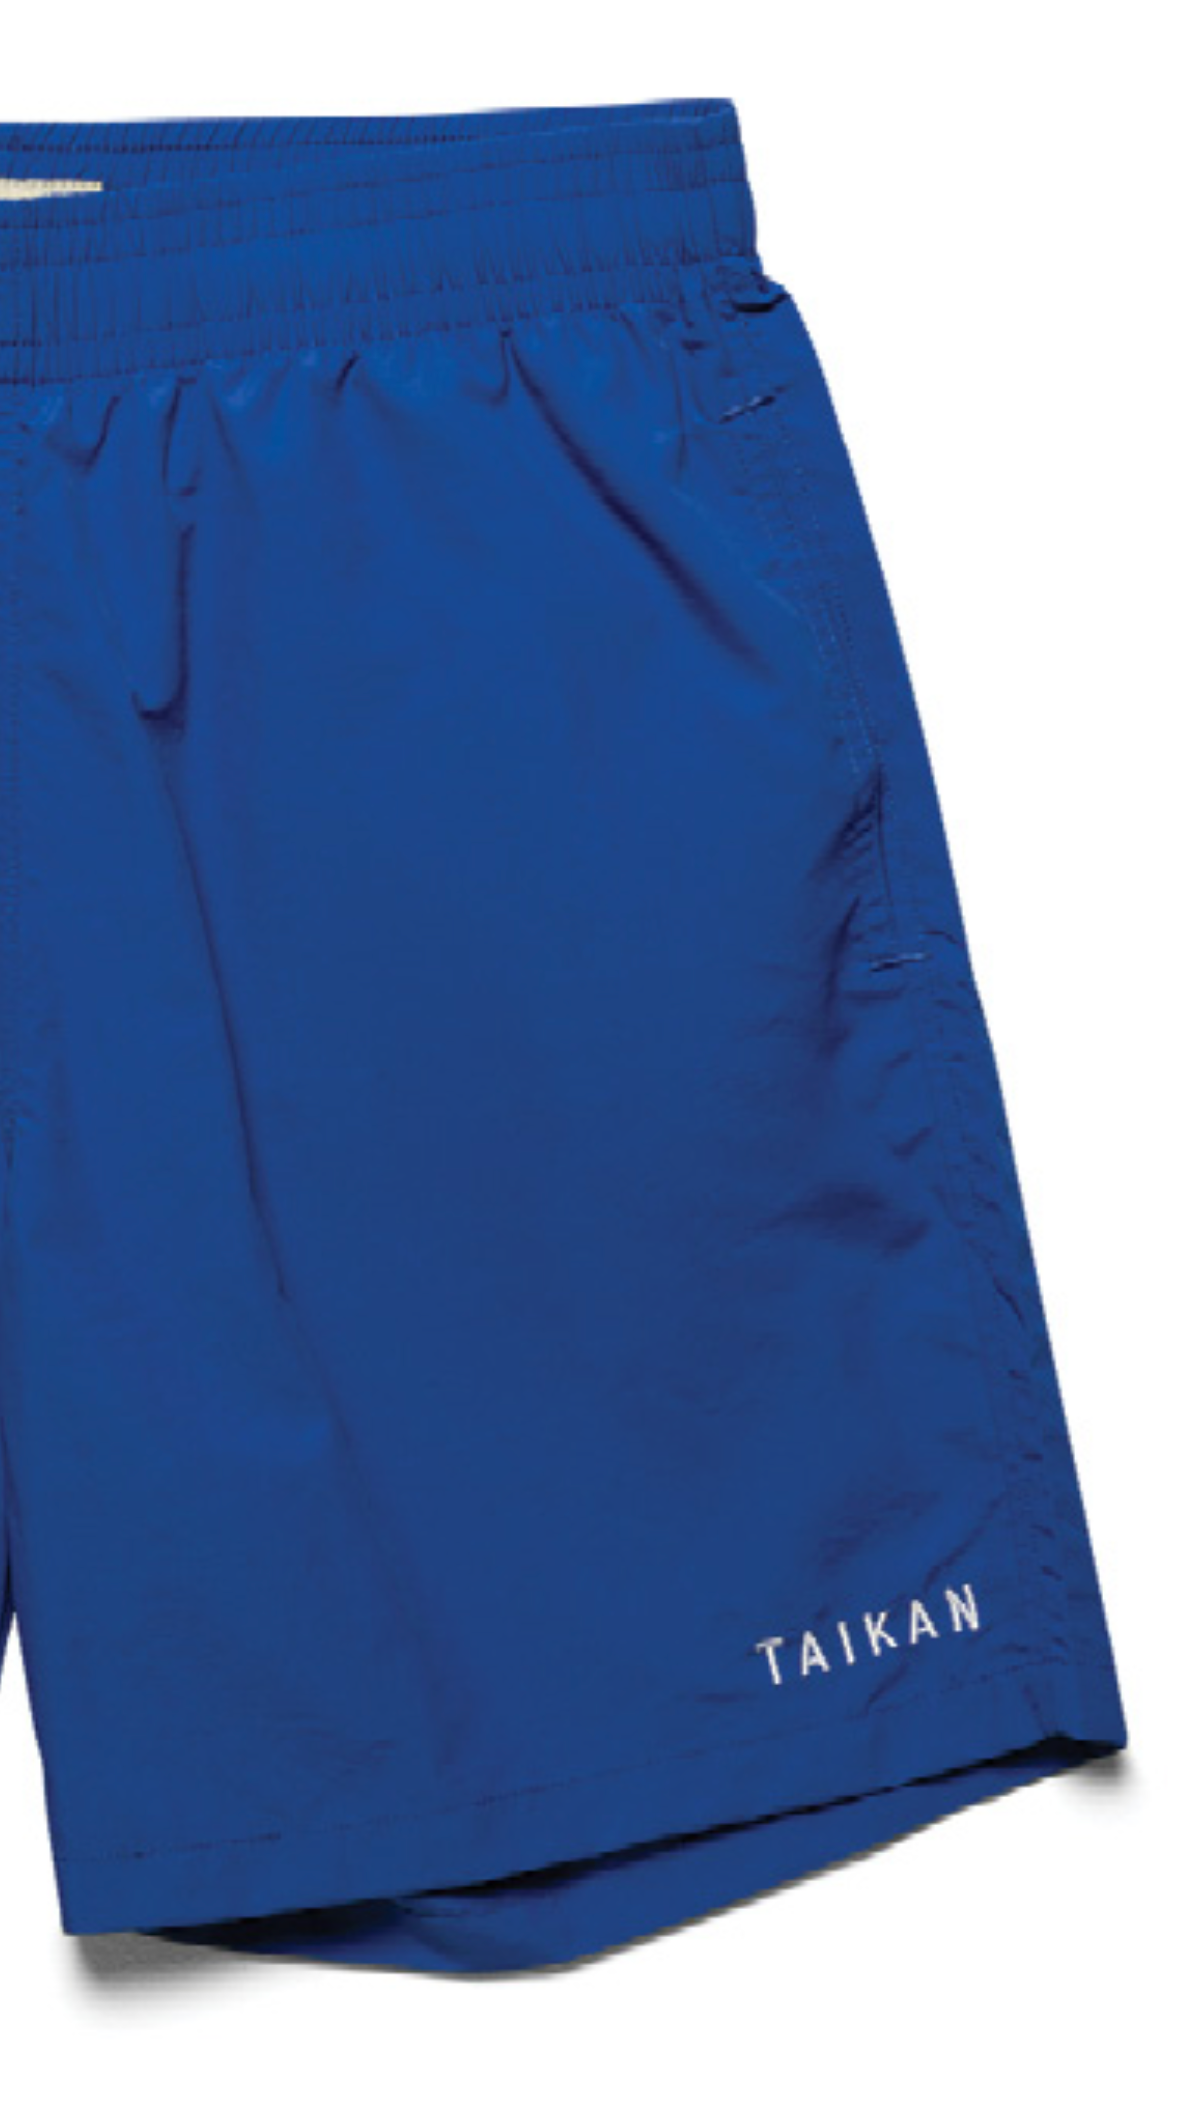 Taikan Nylon shorts - Royal